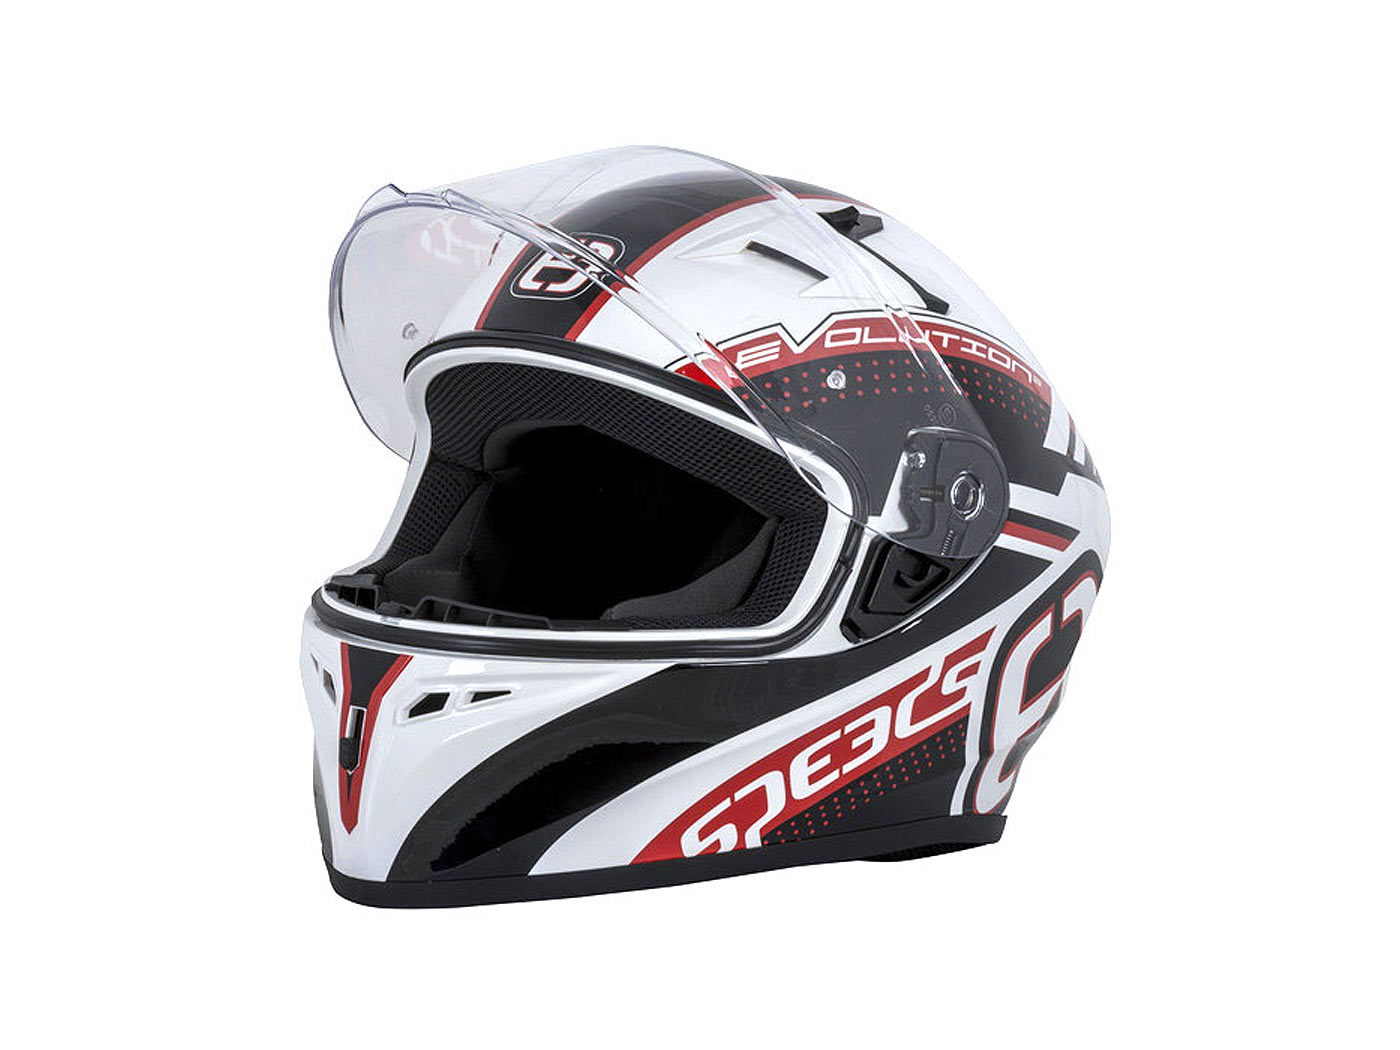 Helm Speeds Evo III weiß/schwarz/rot - Größe L